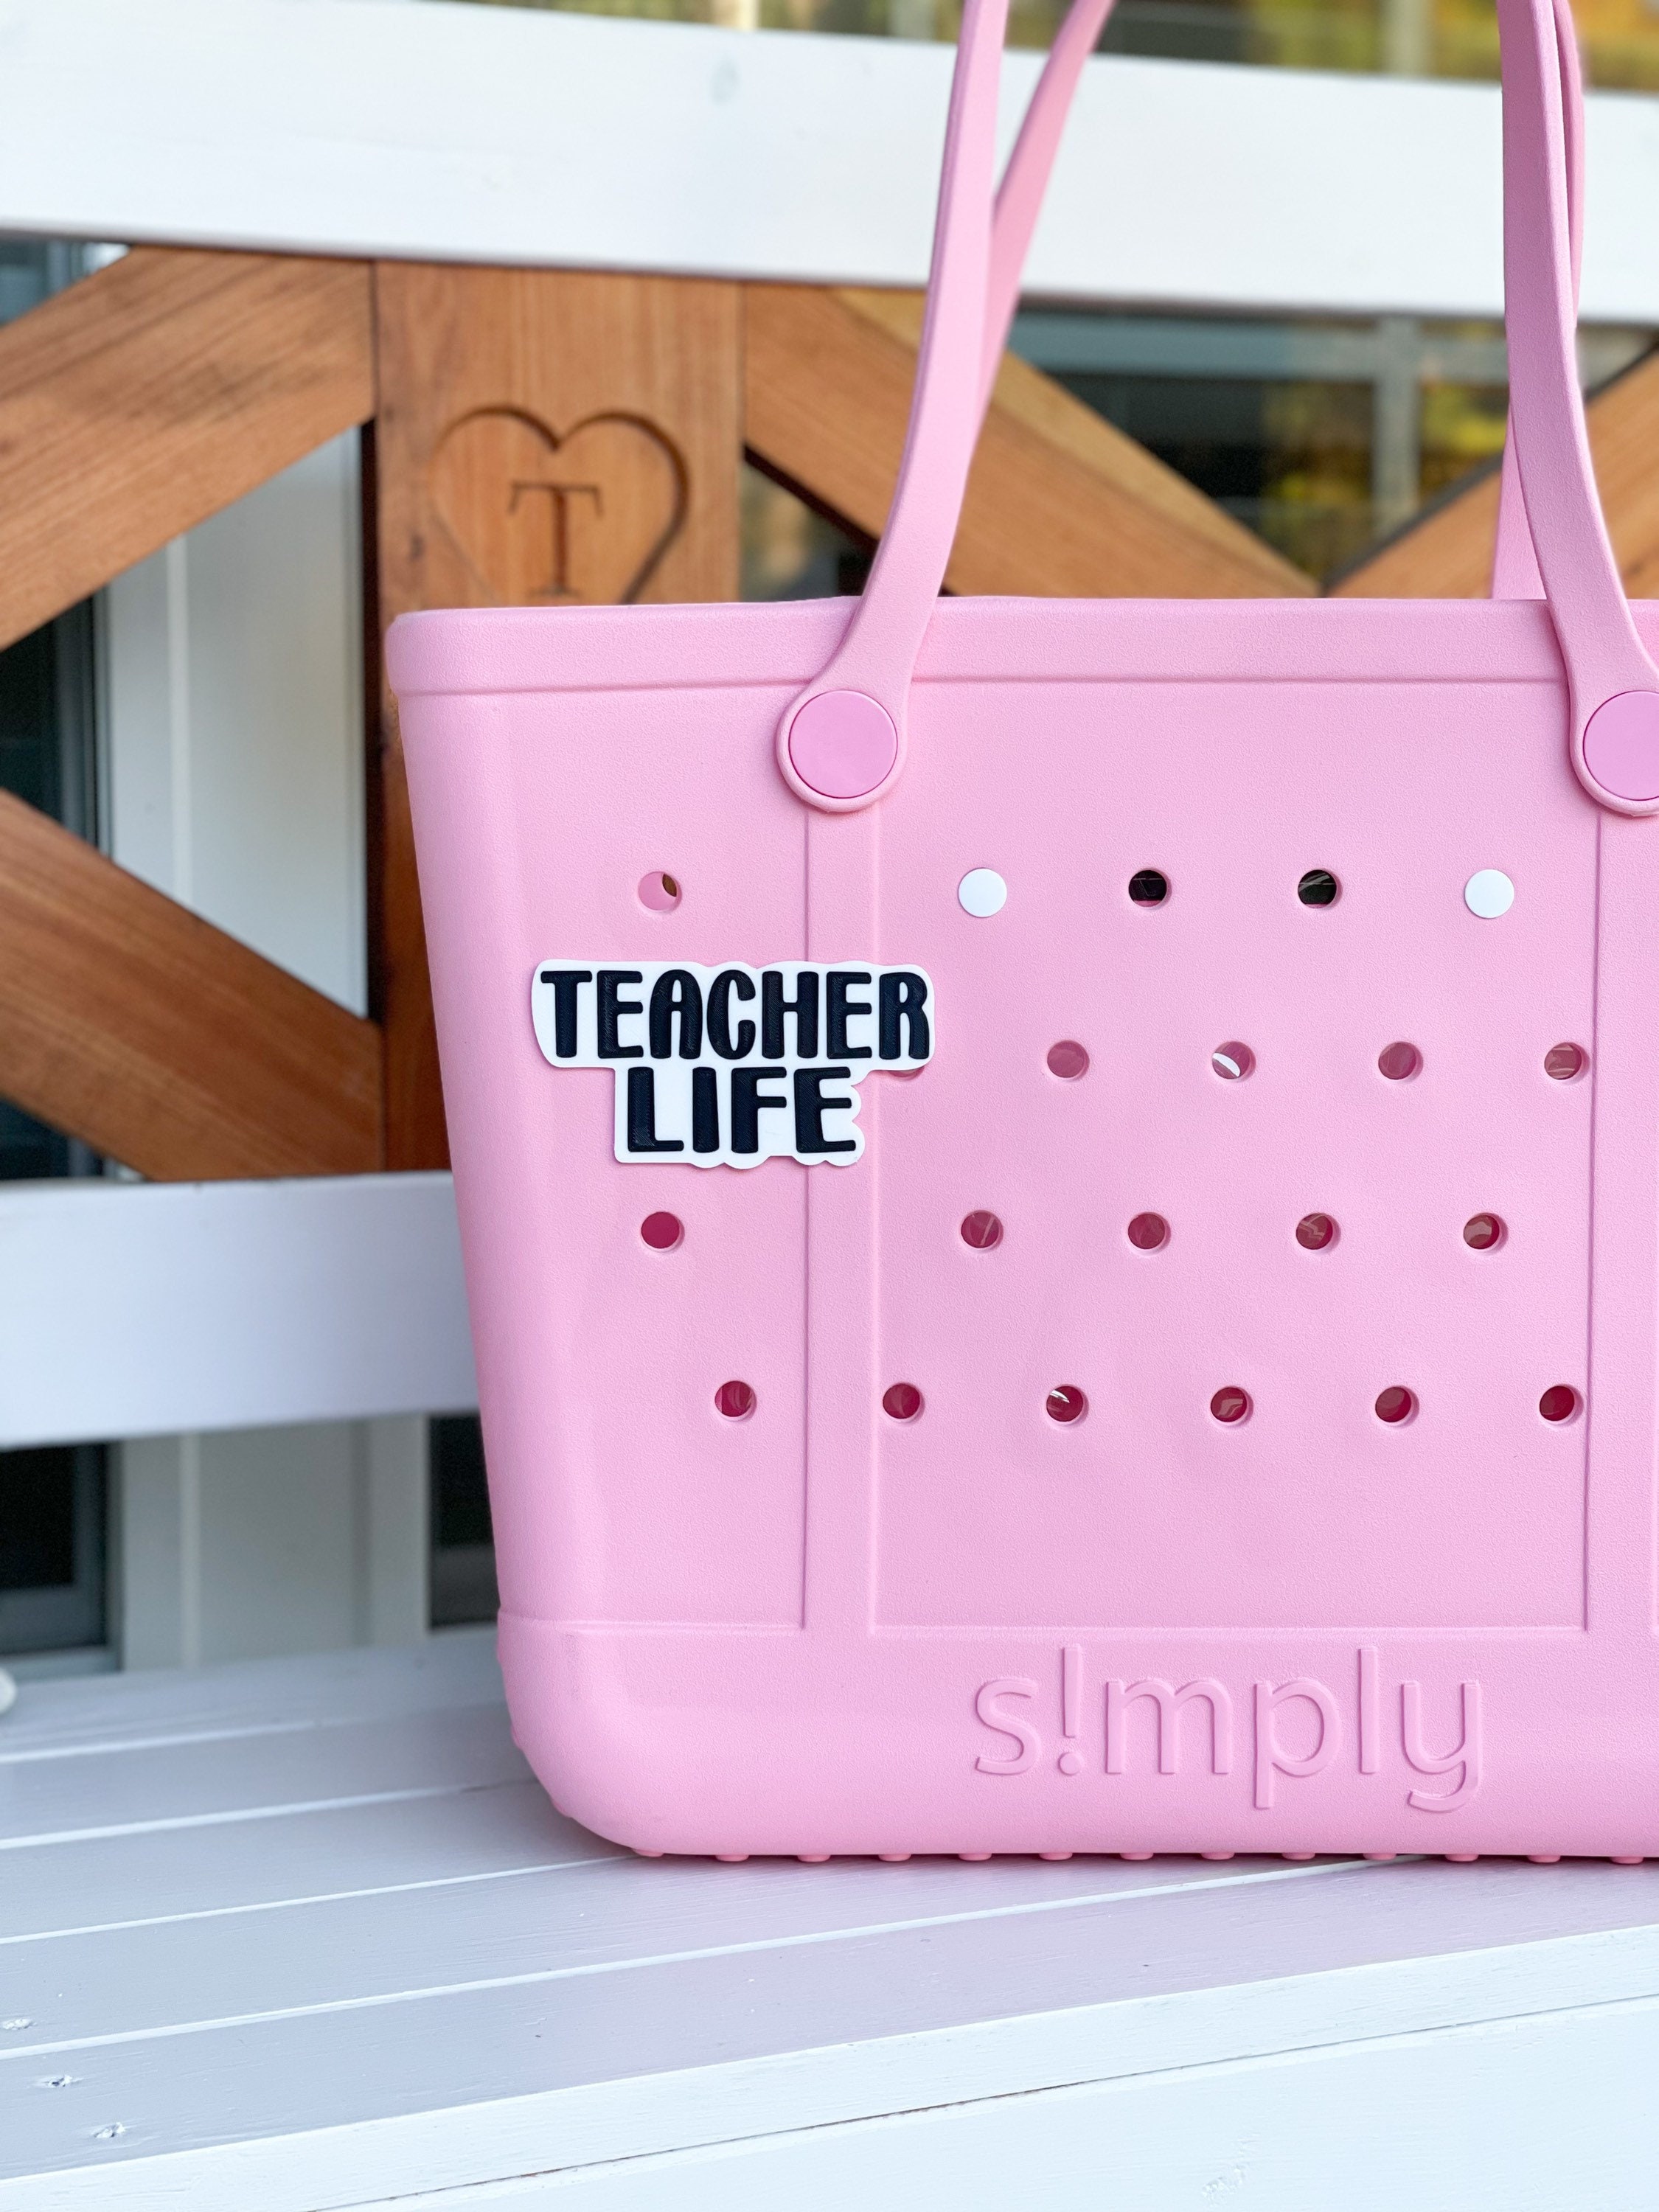 Teacher Bag Charm/ Bogg Charm/ Bag Charms / Bogg Bag Charm / 